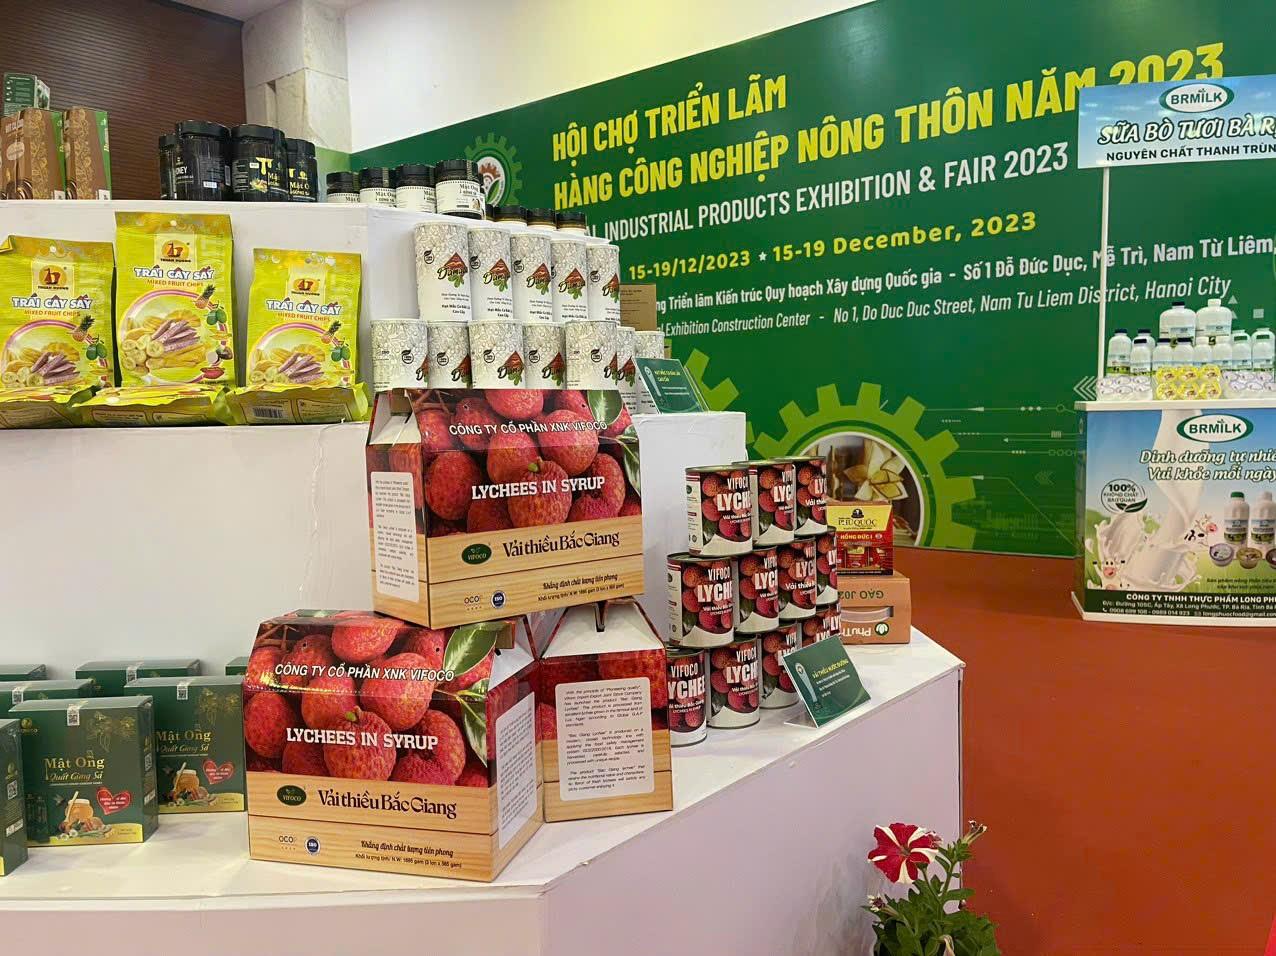 Tỉnh Bắc Giang có 03 sản phẩm được công nhận sản phẩm công nghiệp nông thôn tiêu biểu cấp quốc gia - năm 2023